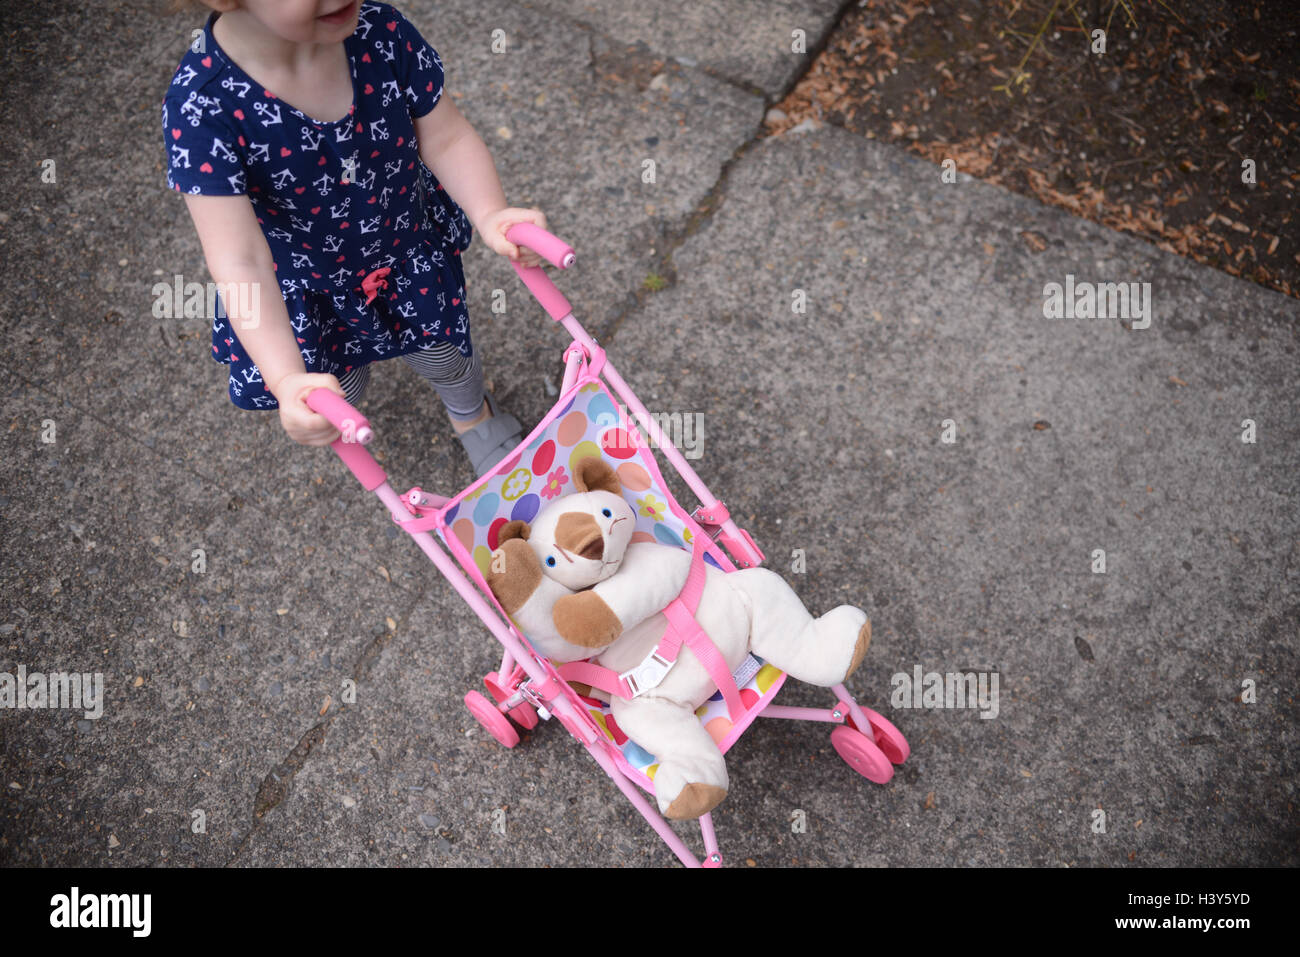 Frais généraux de bébé fille habillé en robe bleu marine ancre poussant en peluche jouet chat rose poussette sur l'asphalte des trottoirs de la ville Banque D'Images